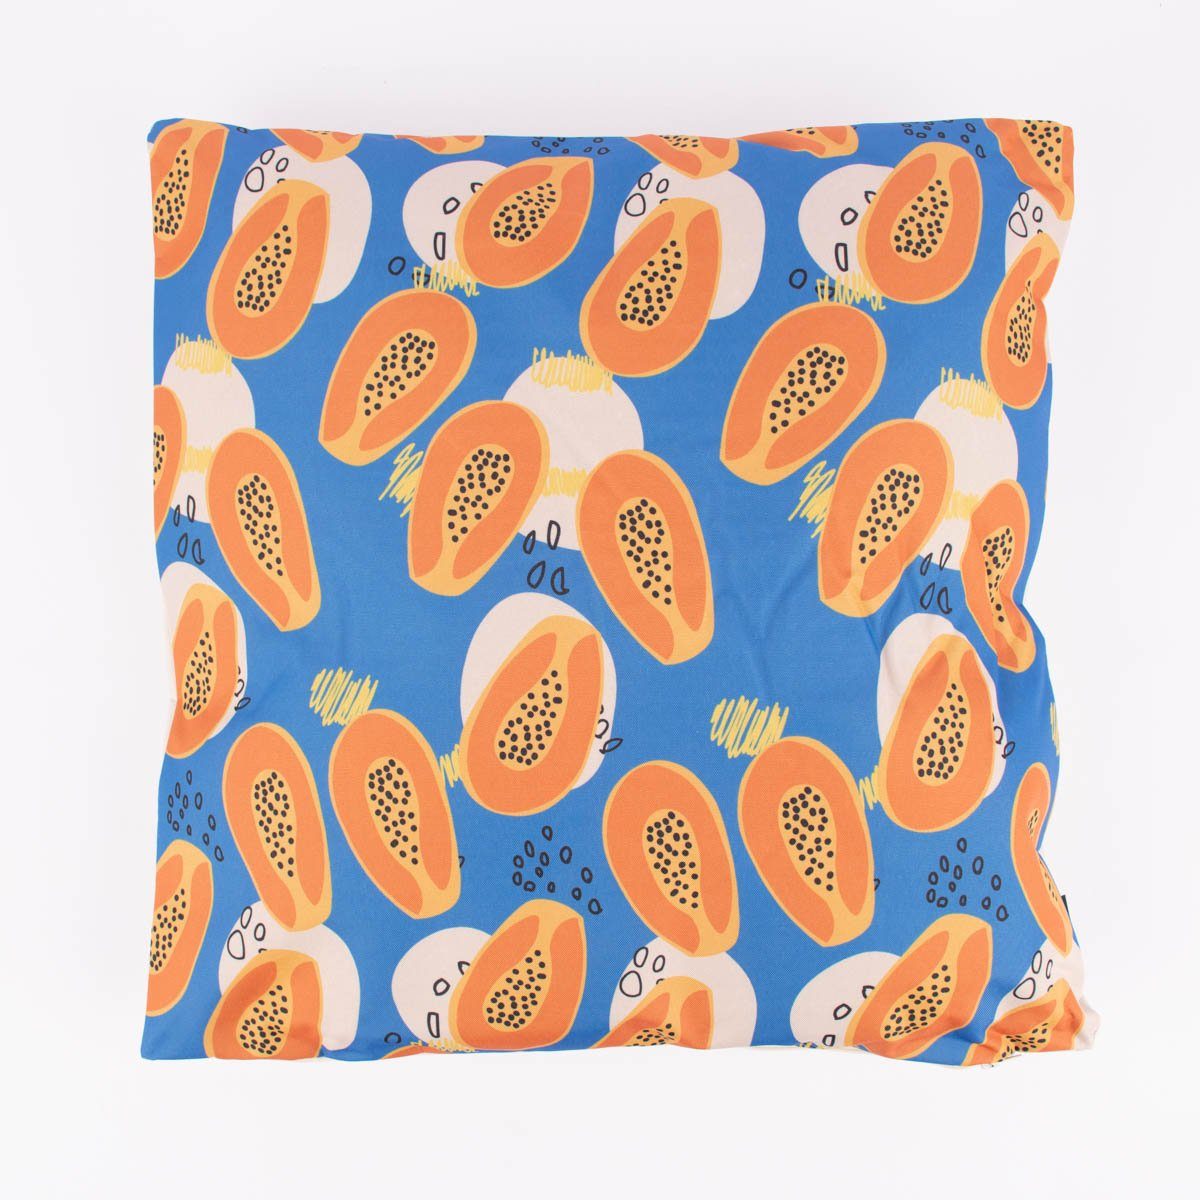 SCHÖNER LEBEN. Dekokissen Outdoor Kissen Papaya abstrakt blau orange beige 45x45cm